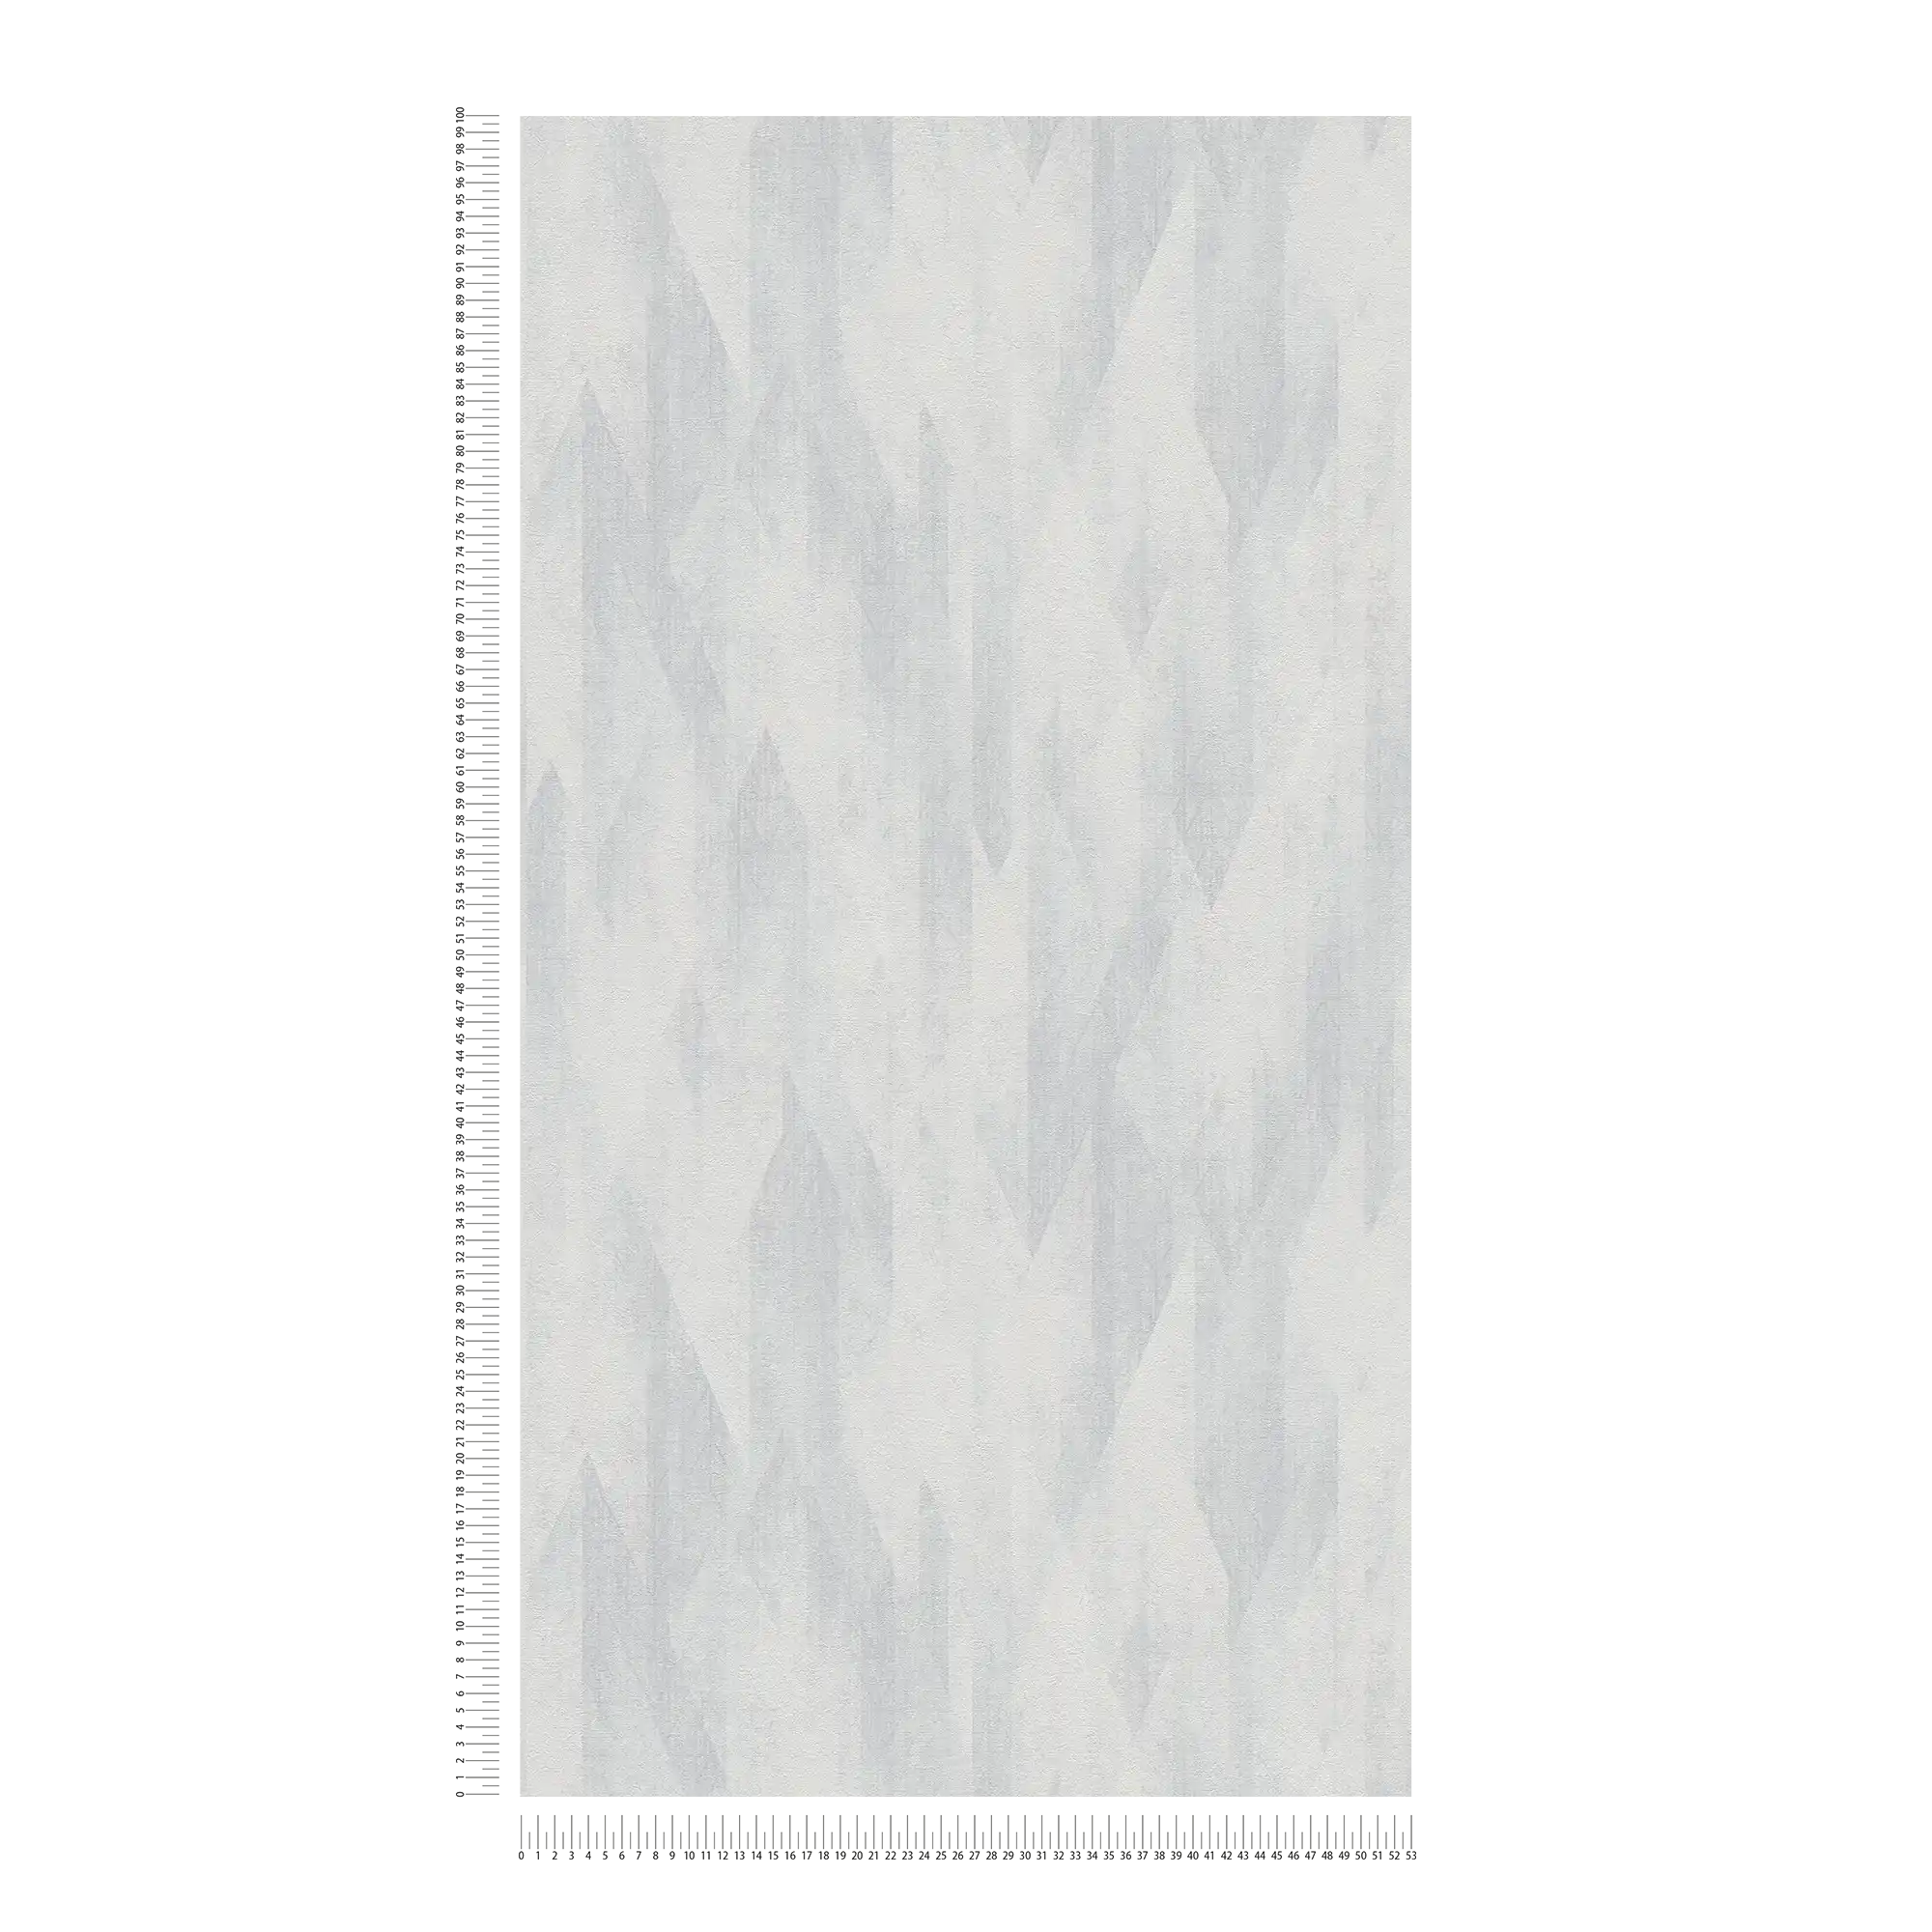             Carta da parati grafica in tessuto non tessuto con sottile motivo a rombi - grigio, bianco
        